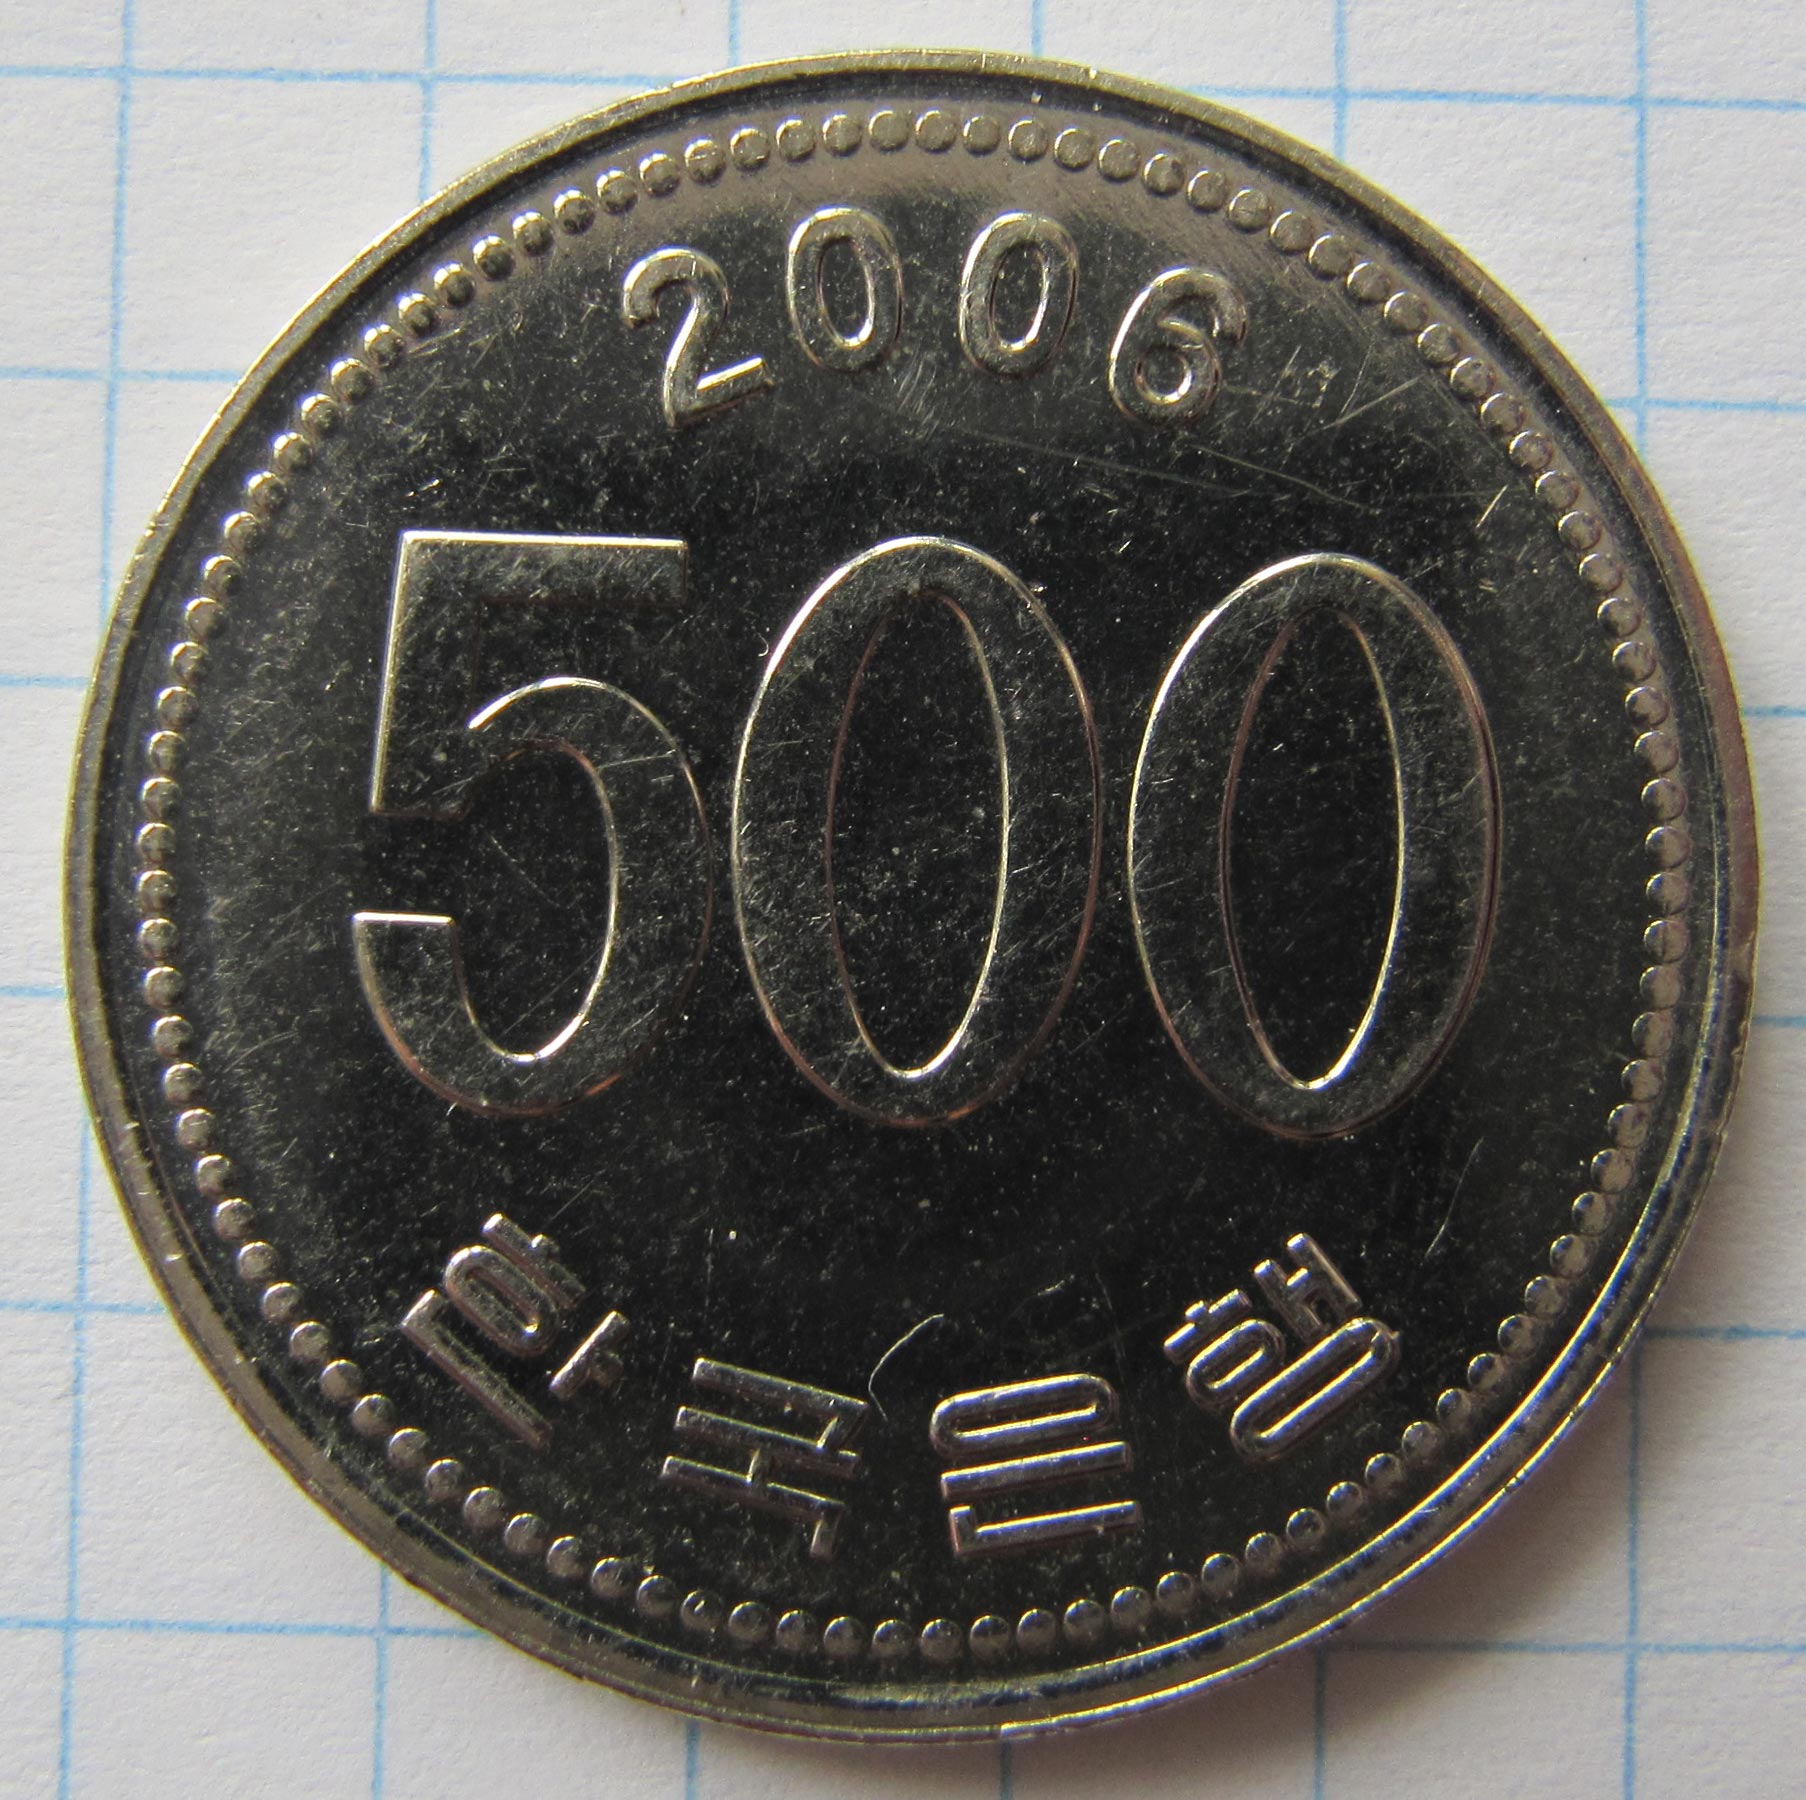 300 ен в рублях